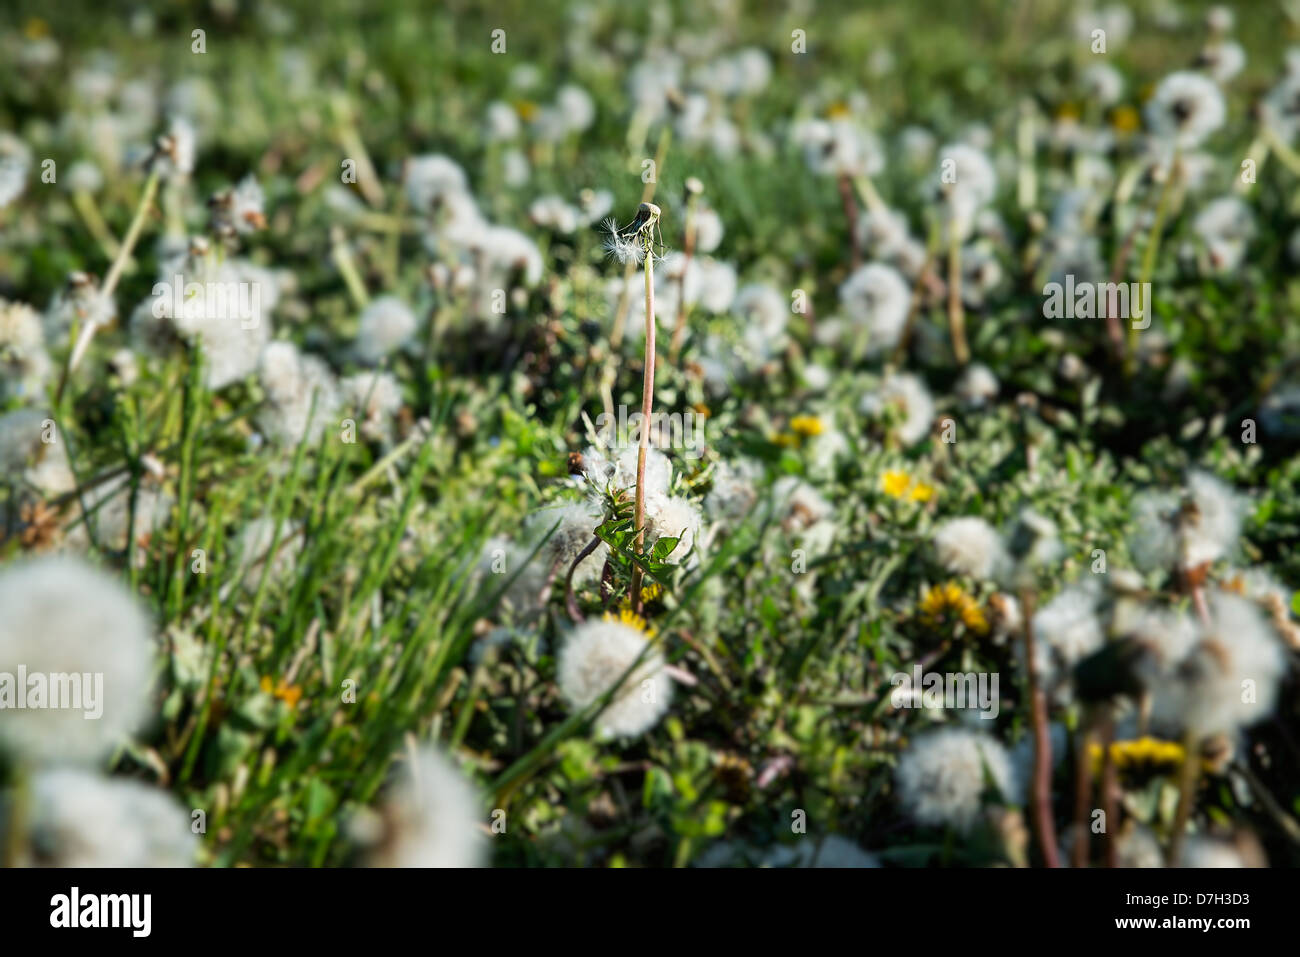 Seeded Dandelions. Stock Photo